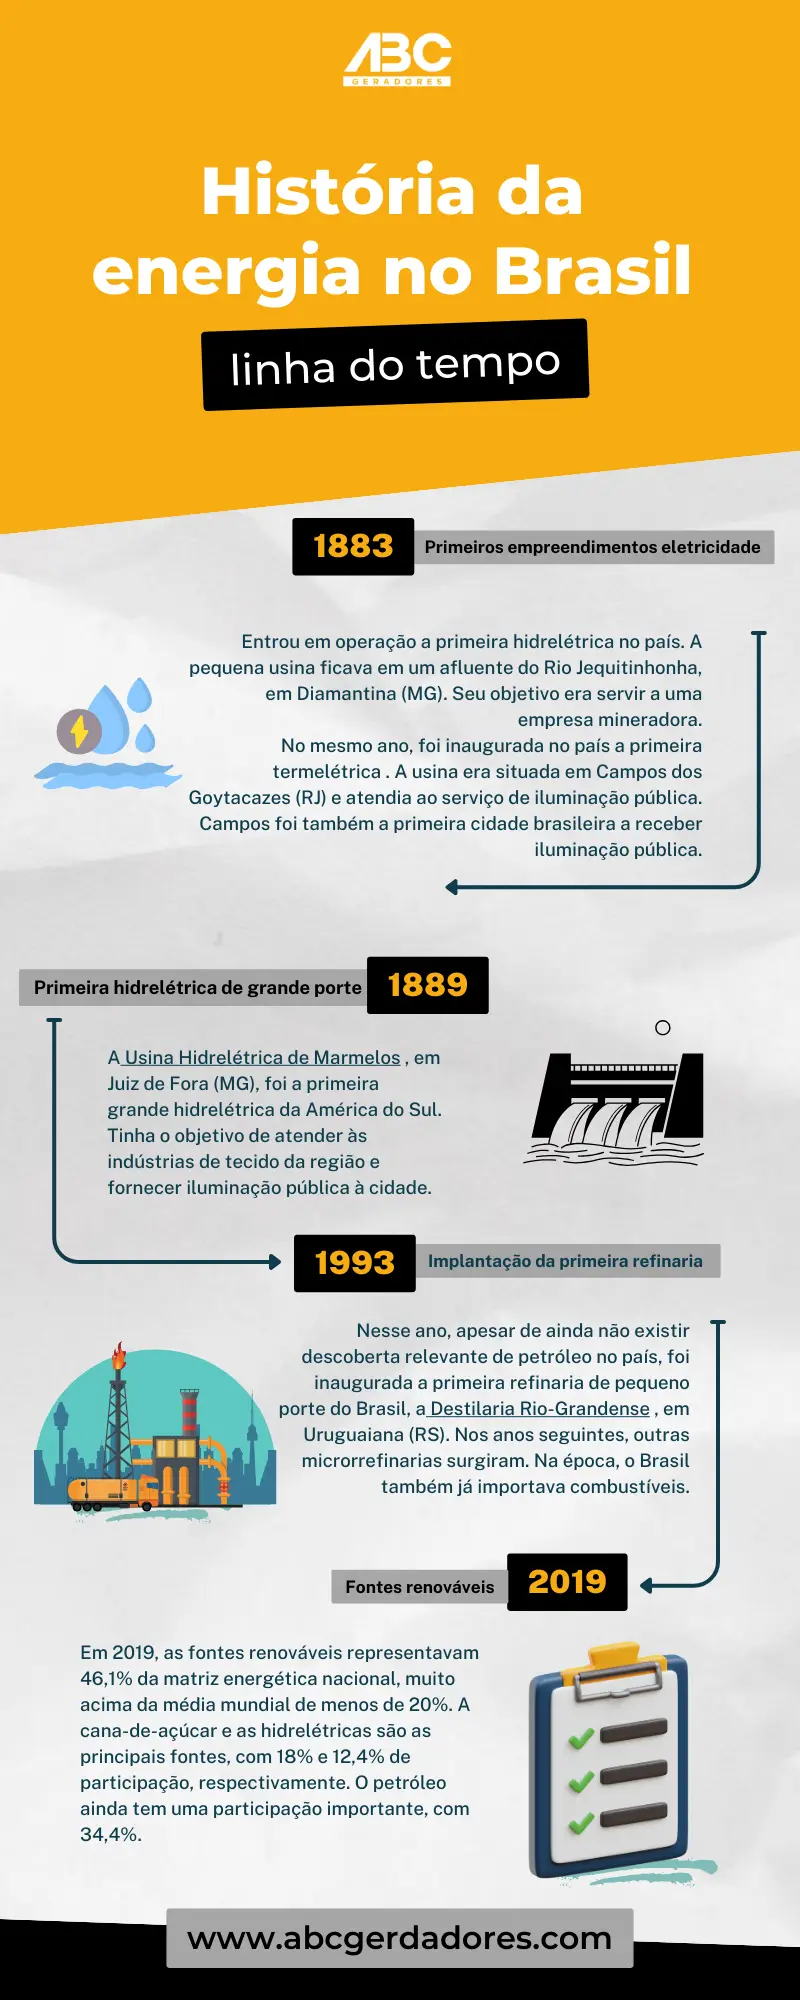 Histórico da energia para industrias no Brasil. Passando pelos períodos de 1883, 1889, 1993 e 2019.